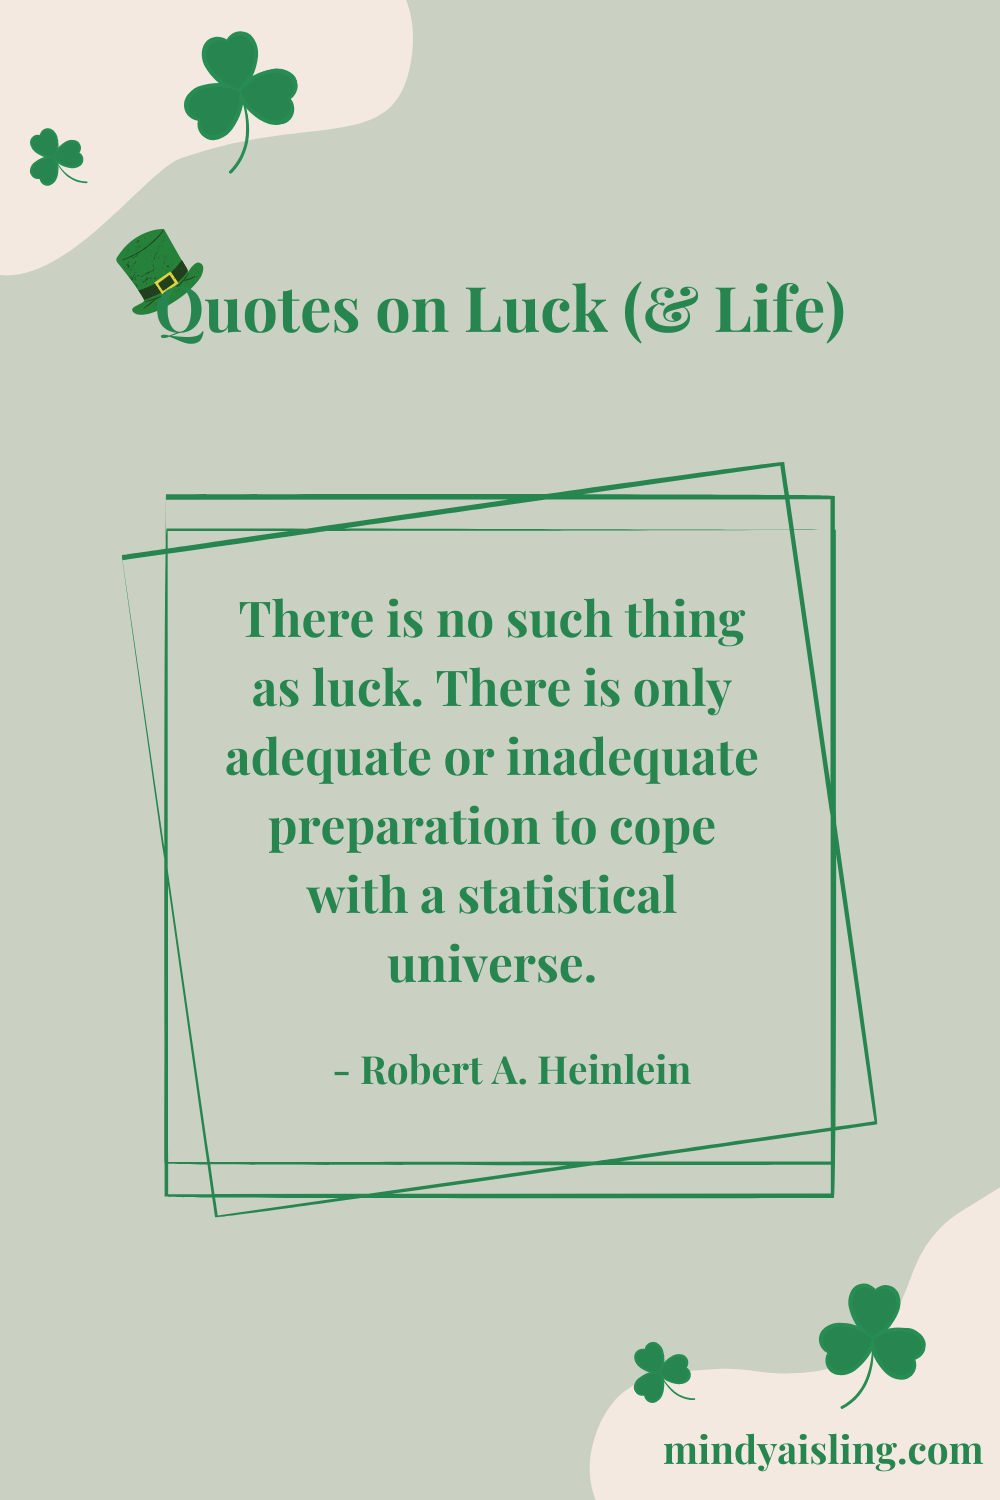 Robert A. Heinlein Quote